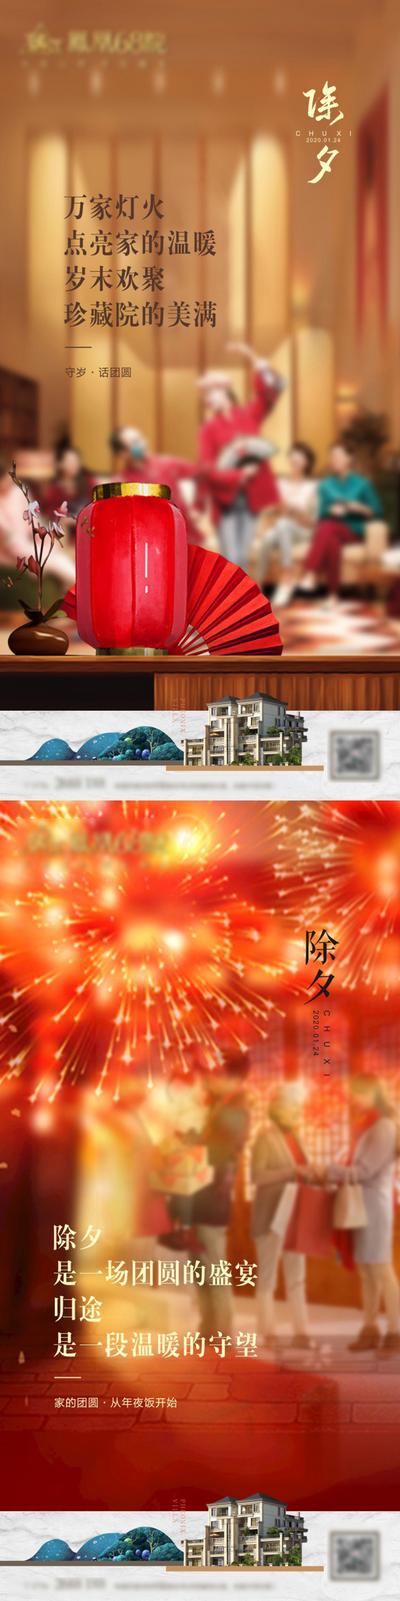 南门网 海报 房地产 除夕 中国传统节日 团圆 喜庆 烟花 灯笼